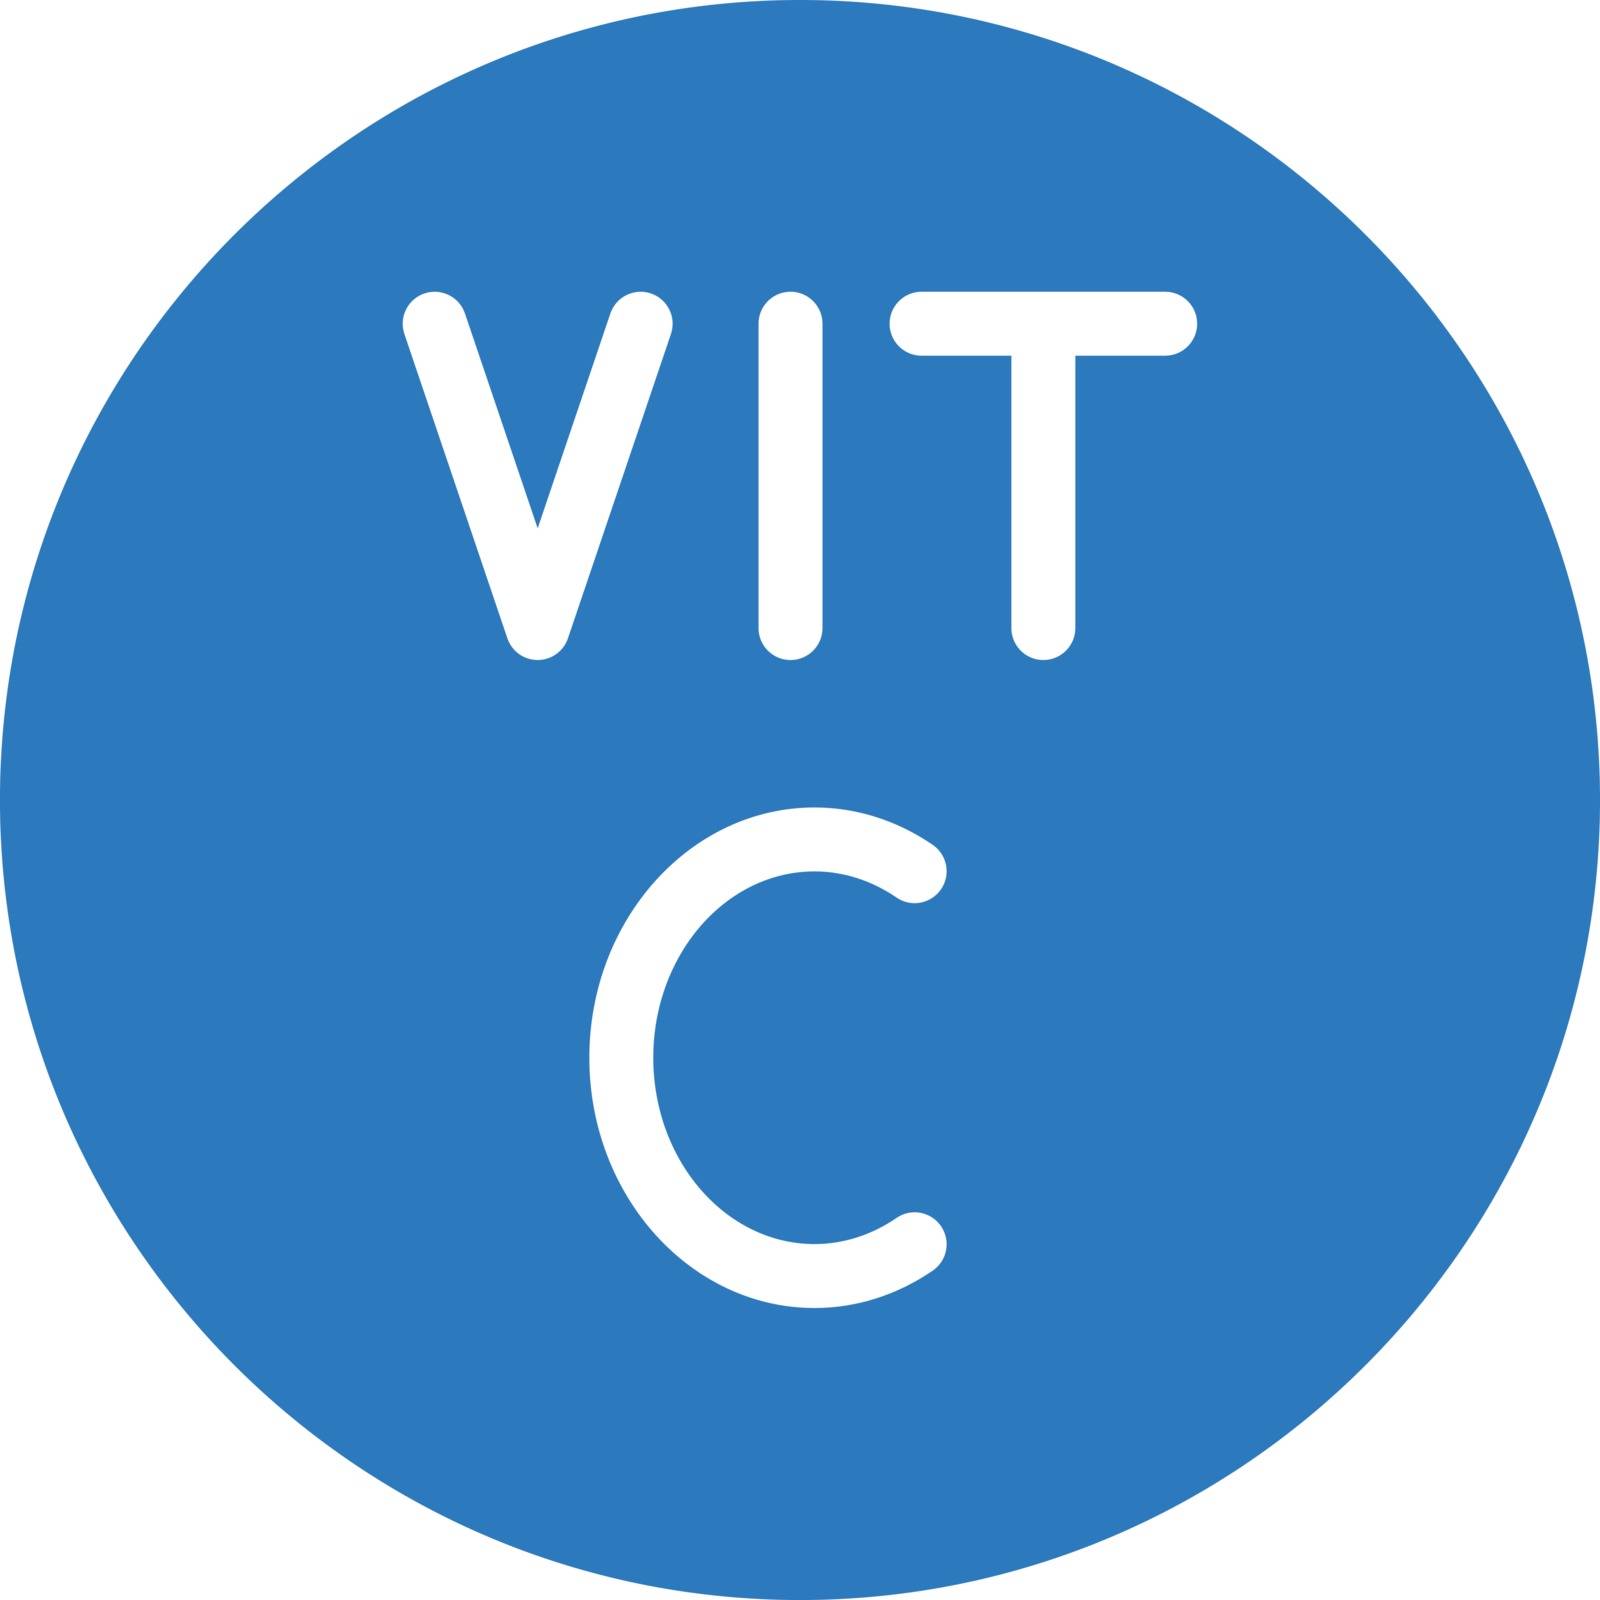 Vitamin C by vectorstall